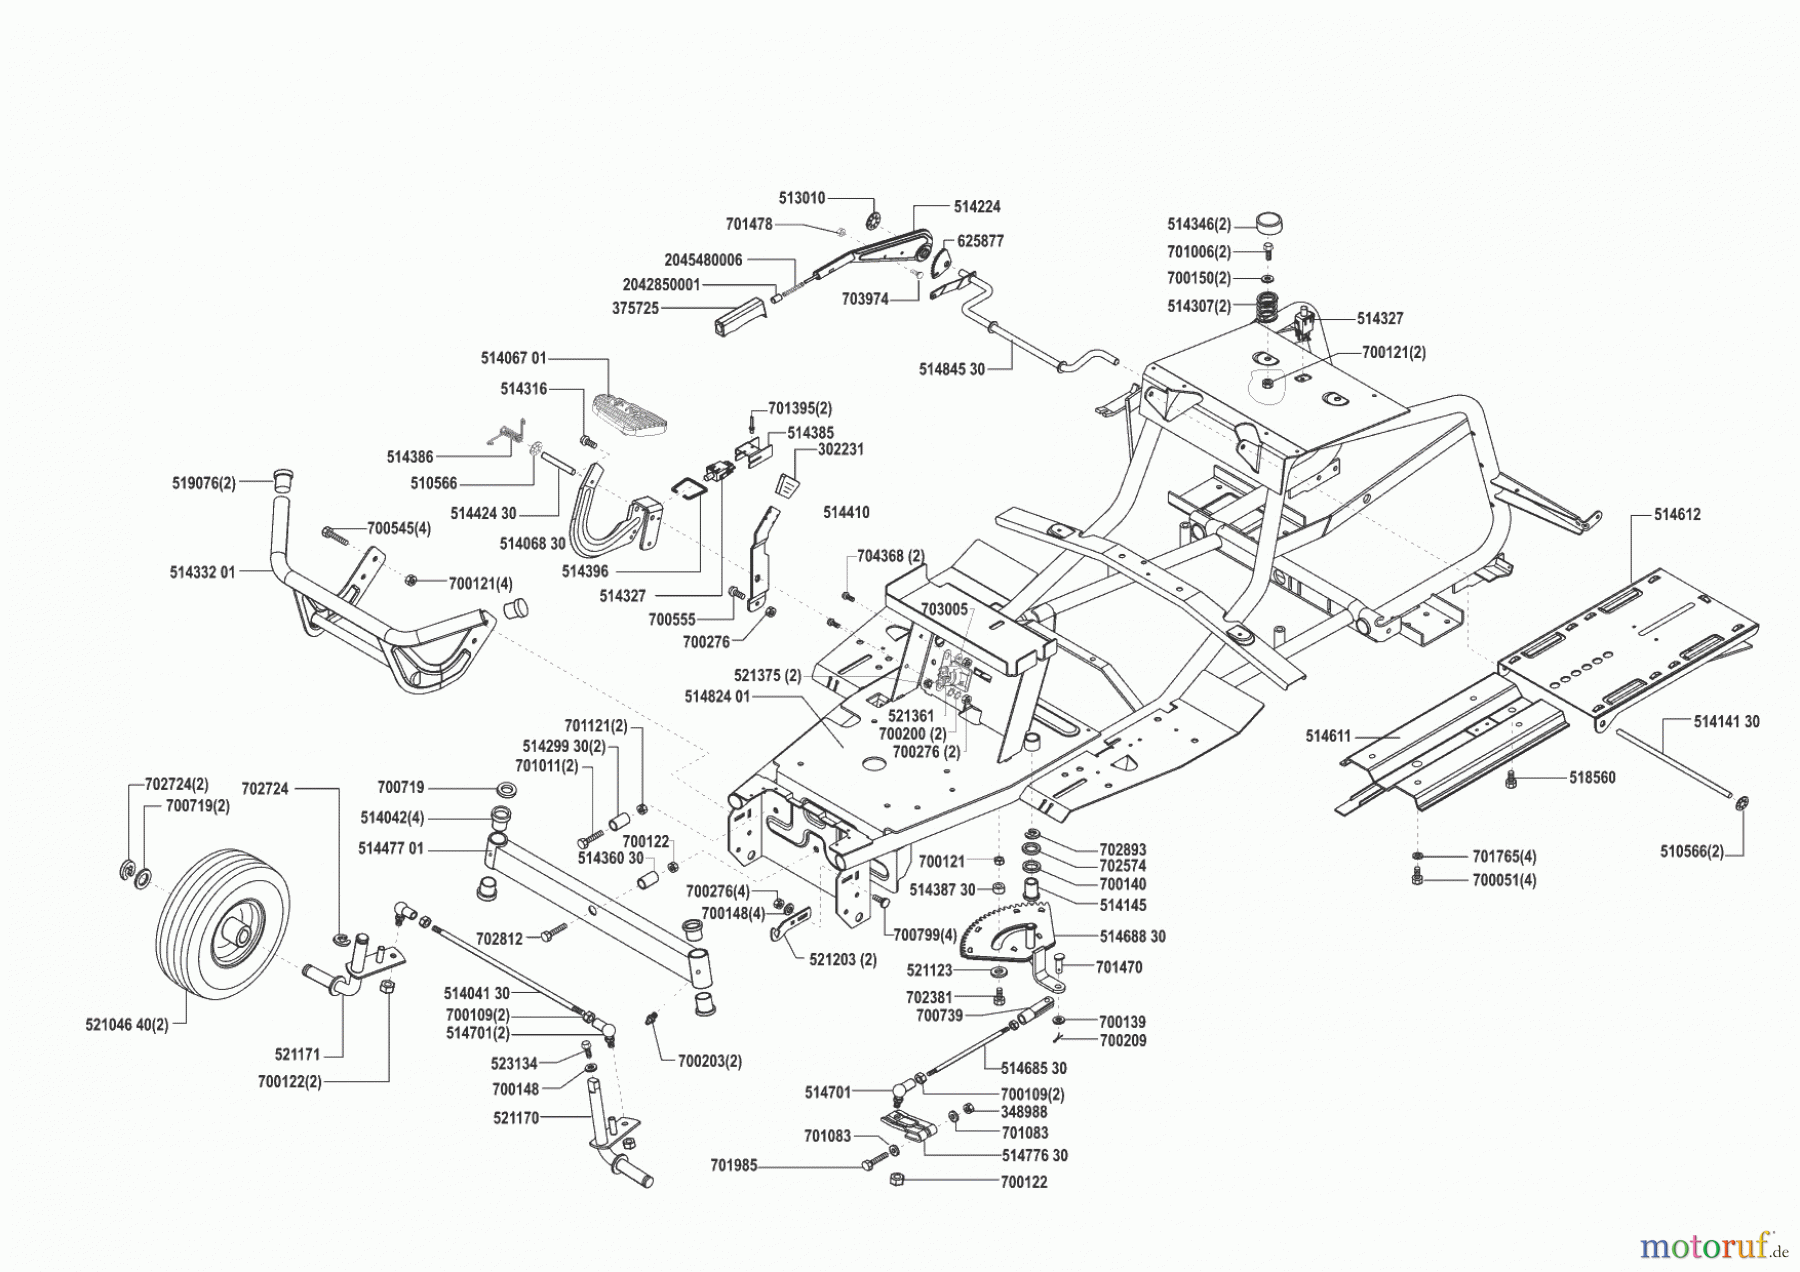  Concord Gartentechnik Rasentraktor T16-102 vor 02/2000 Seite 2